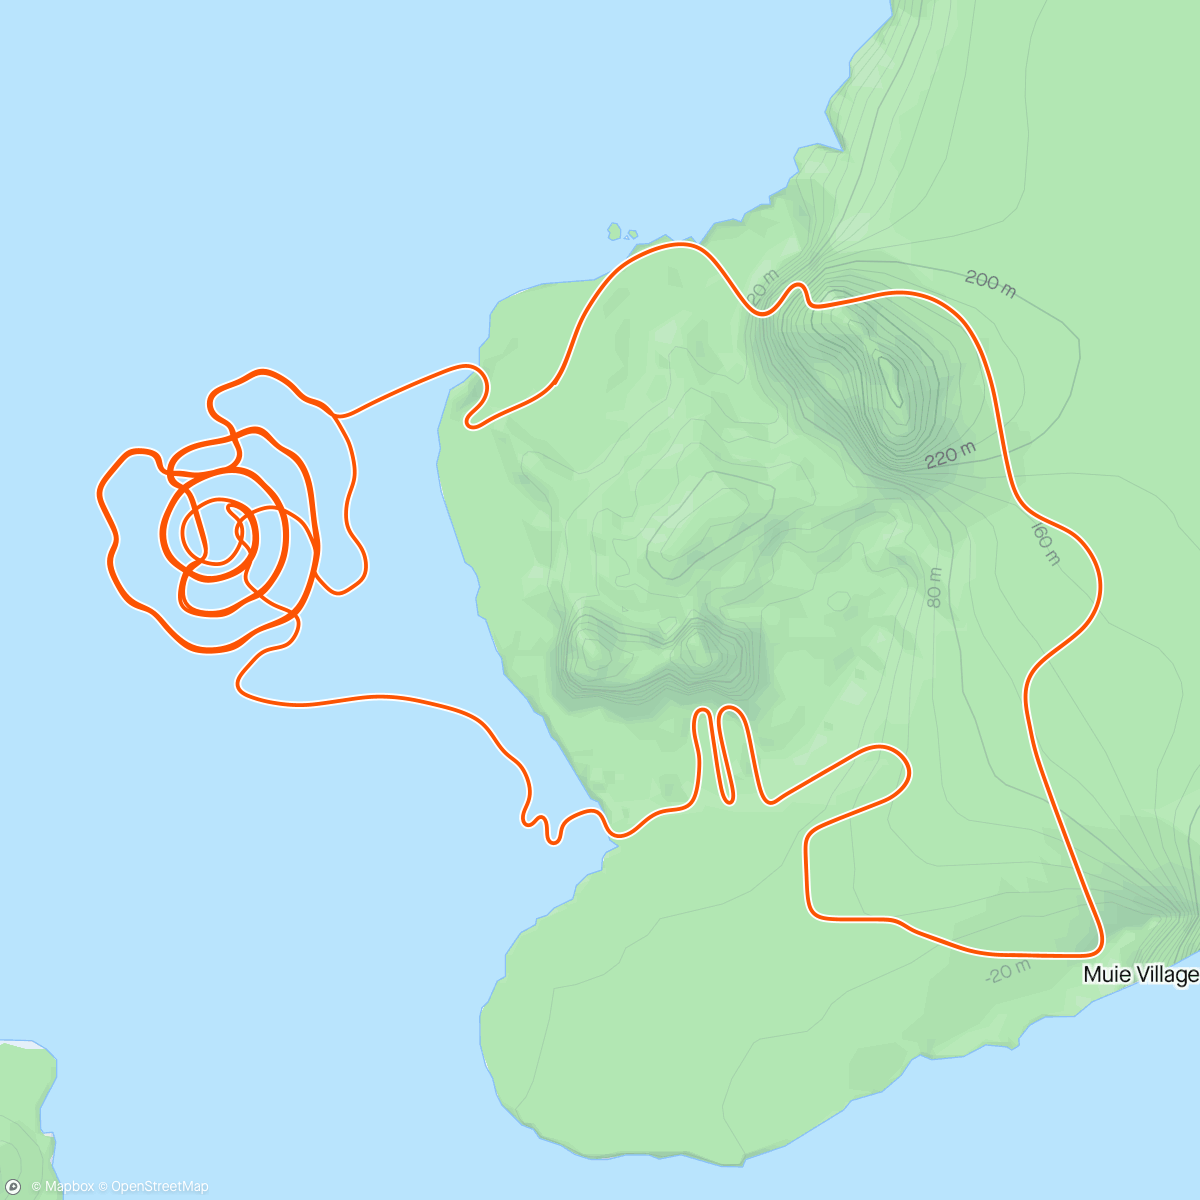 「Zwift - Volcano Climb in Watopia」活動的地圖